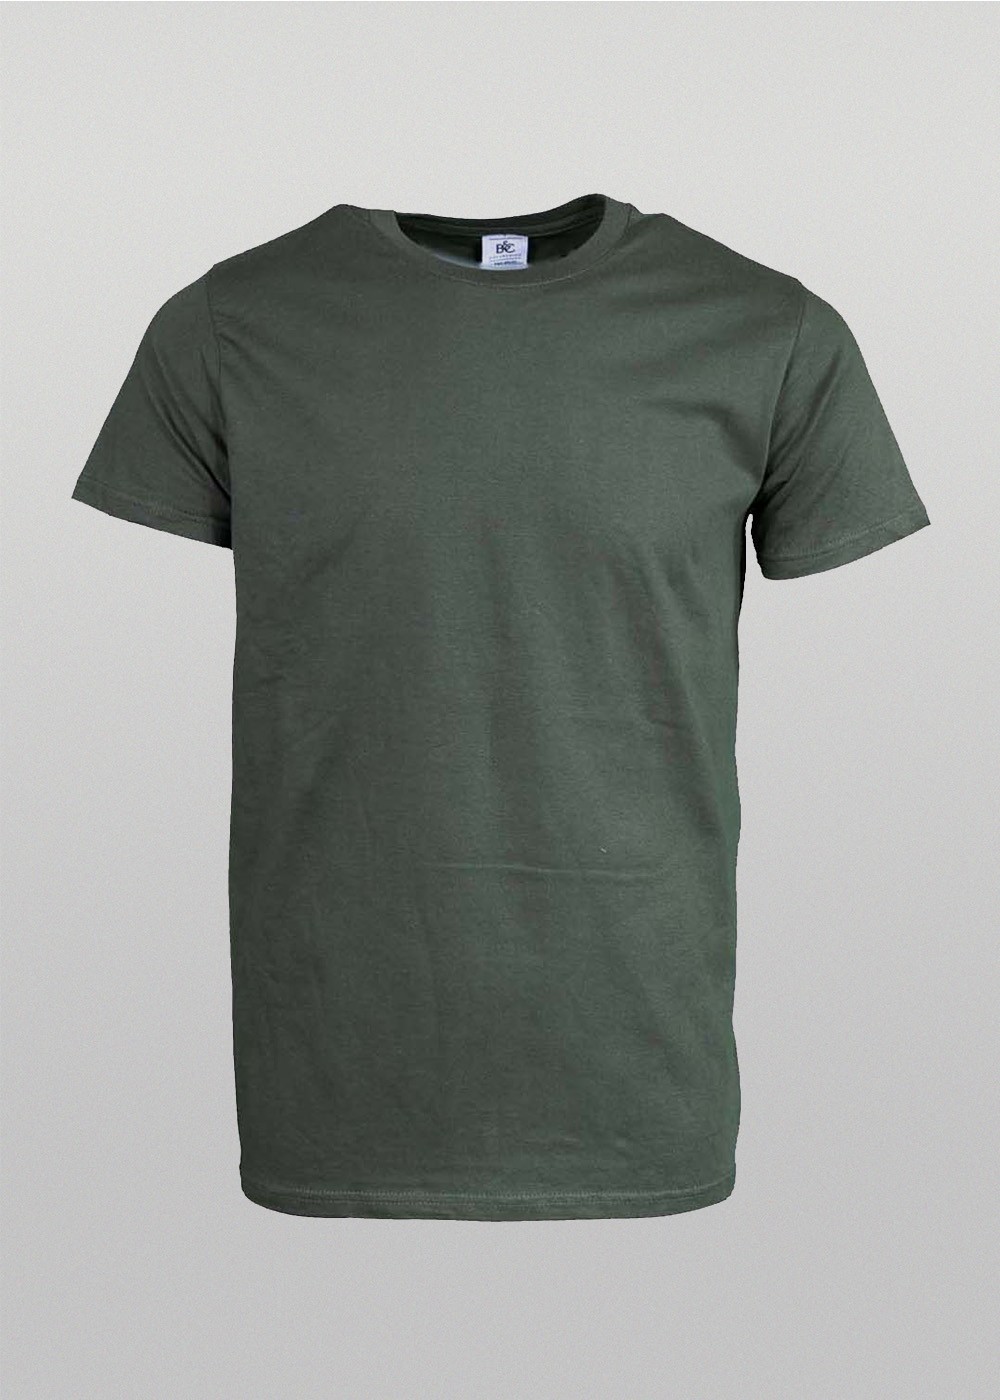 Premium Unisex T-shirt Military